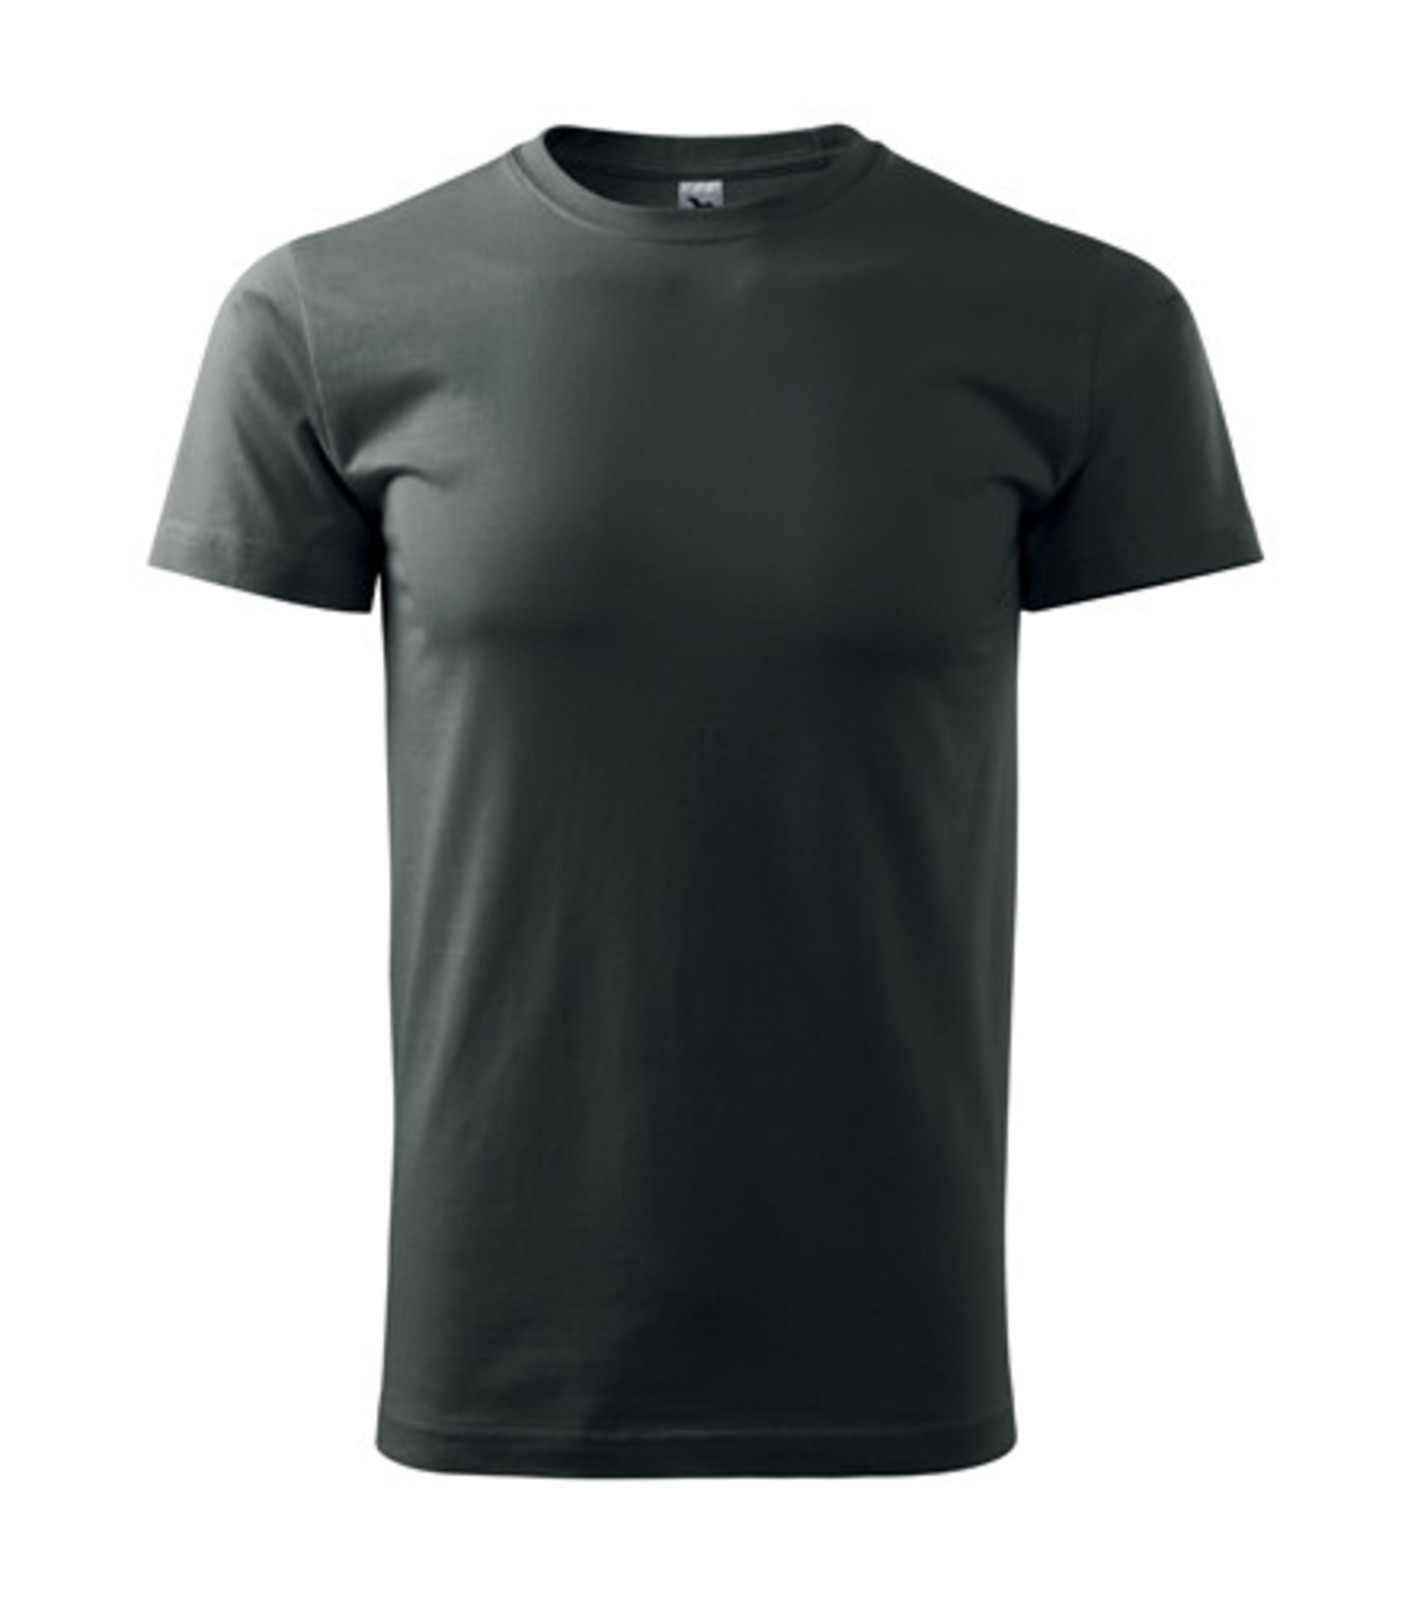 Unisex tričko Malfini Heavy New 137 - veľkosť: 3XL, farba: tmavá bridlica